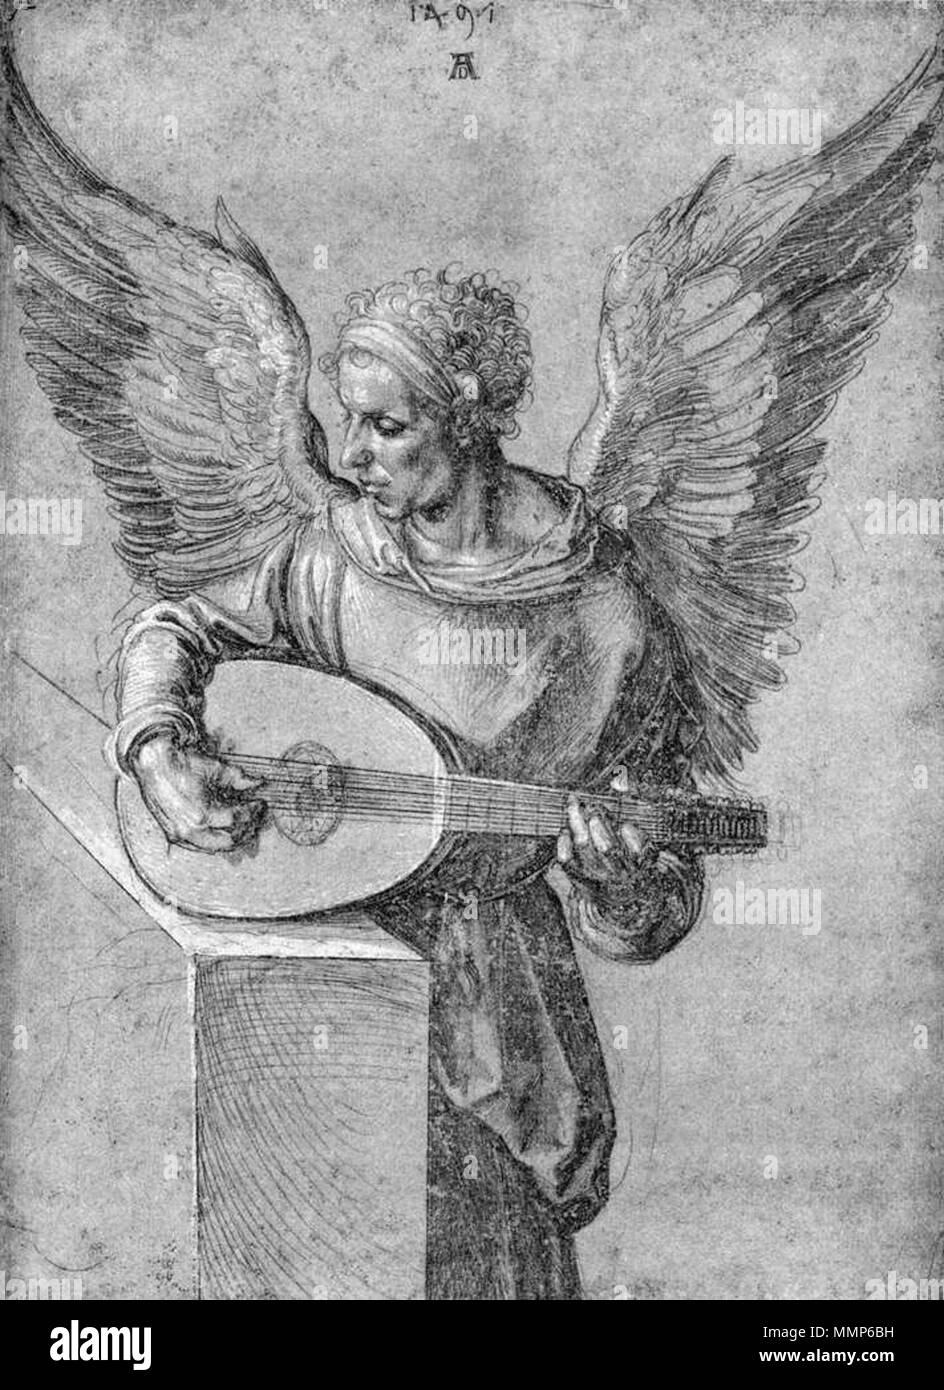 Albrecht Dürer - uomo alato, in idealista abbigliamento, riproduzione di un liuto - WGA07044 Foto Stock